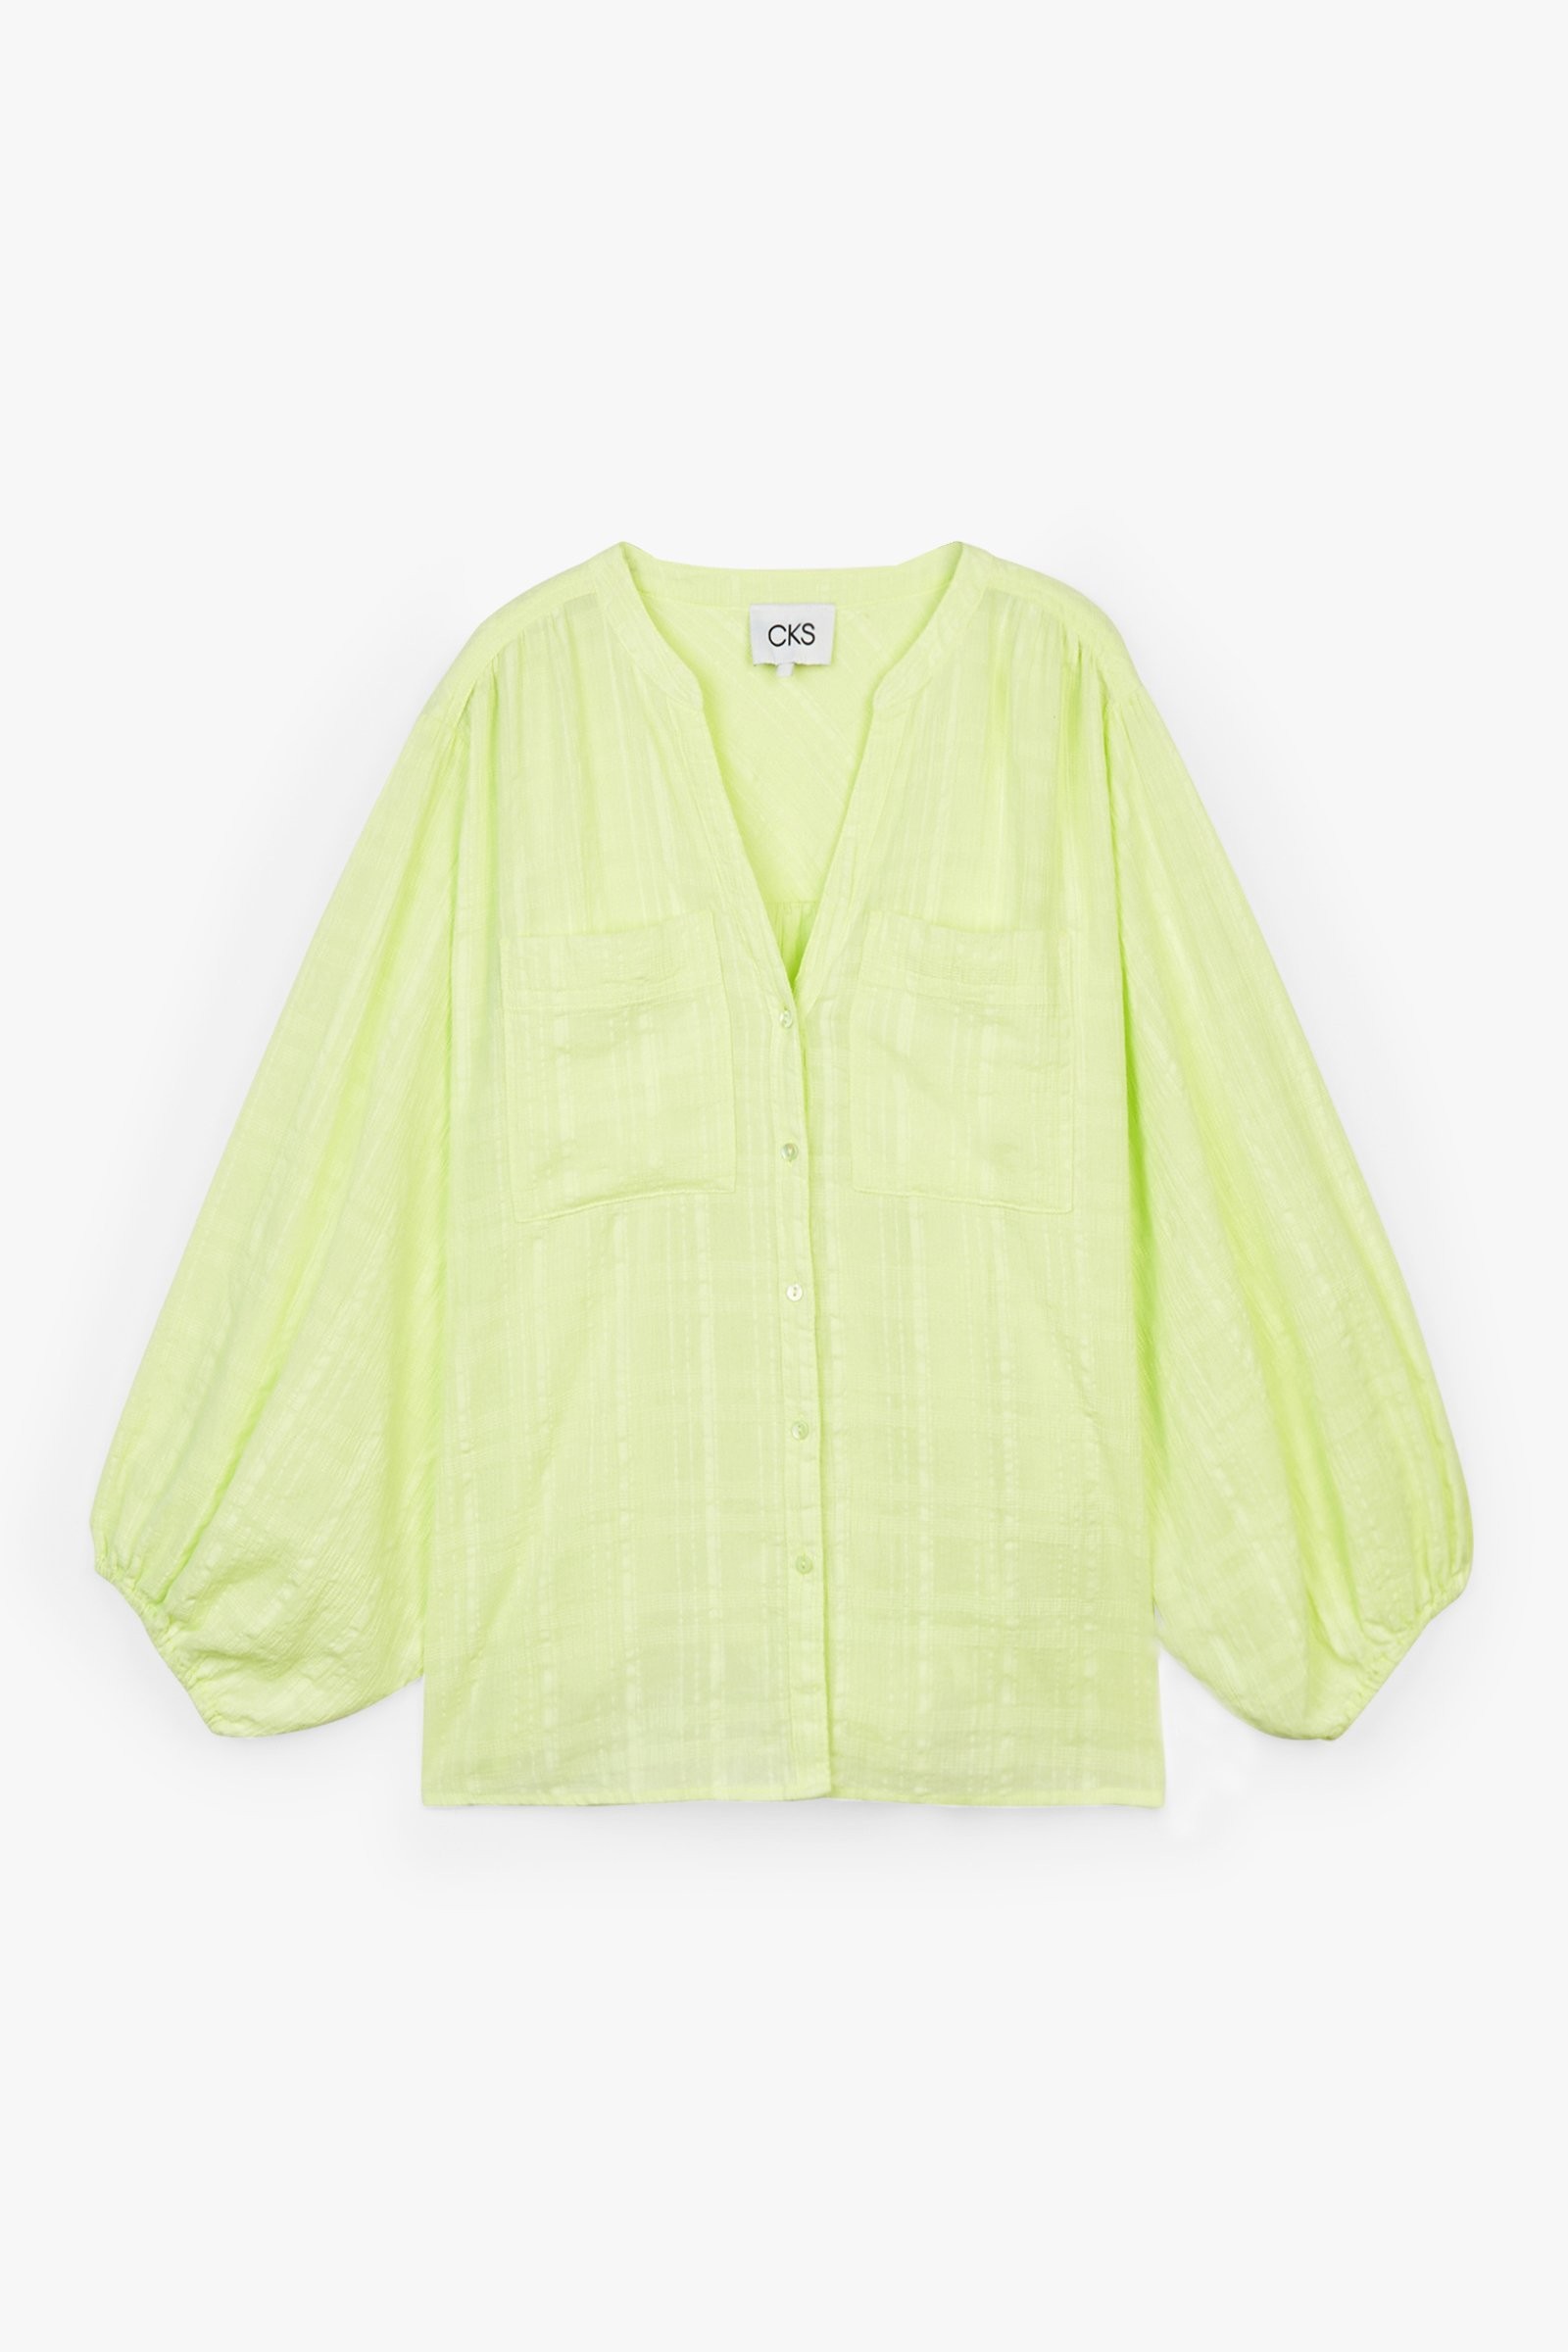 CKS Dames - WILD - blouse short sleeves - light green